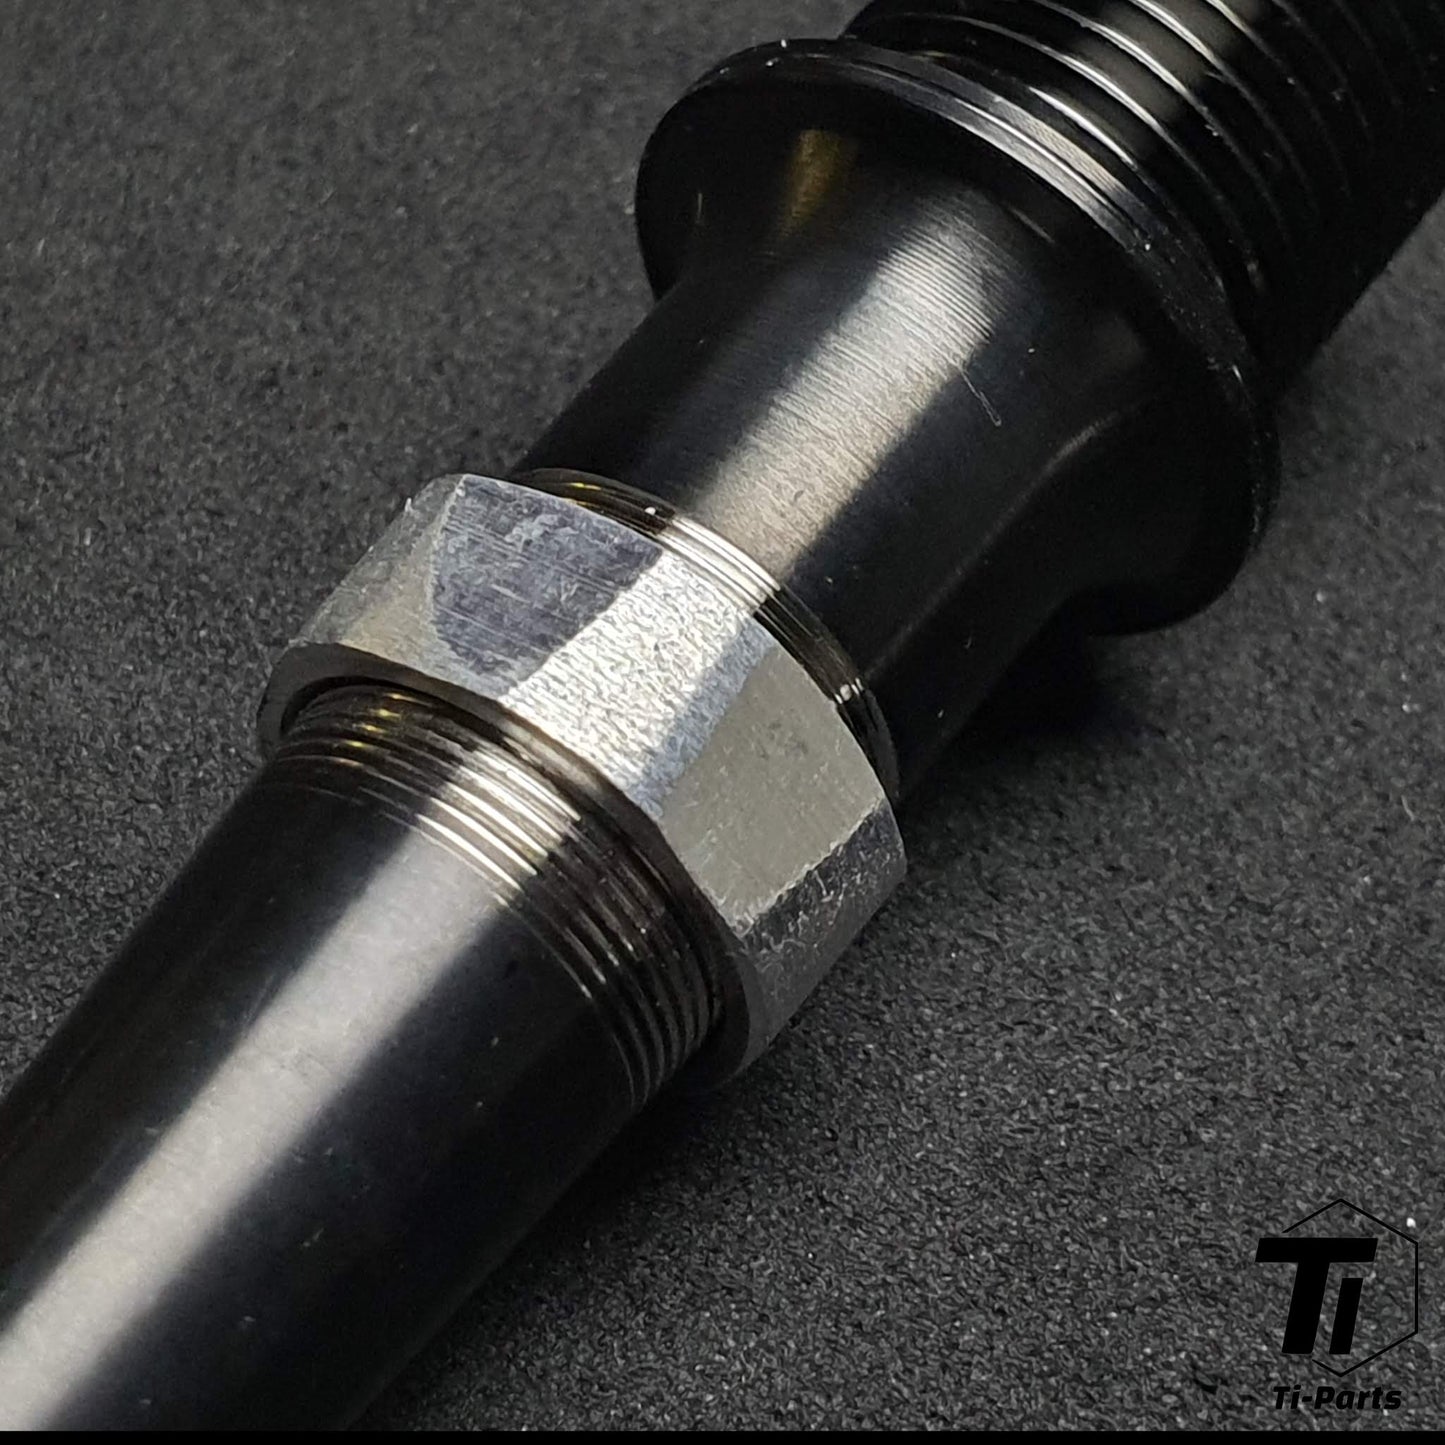 Titanium Axle for Look Pedal | Keo 2 Max Blade Carbon Ceramic Ti | Grade 29 Titanium Singapore